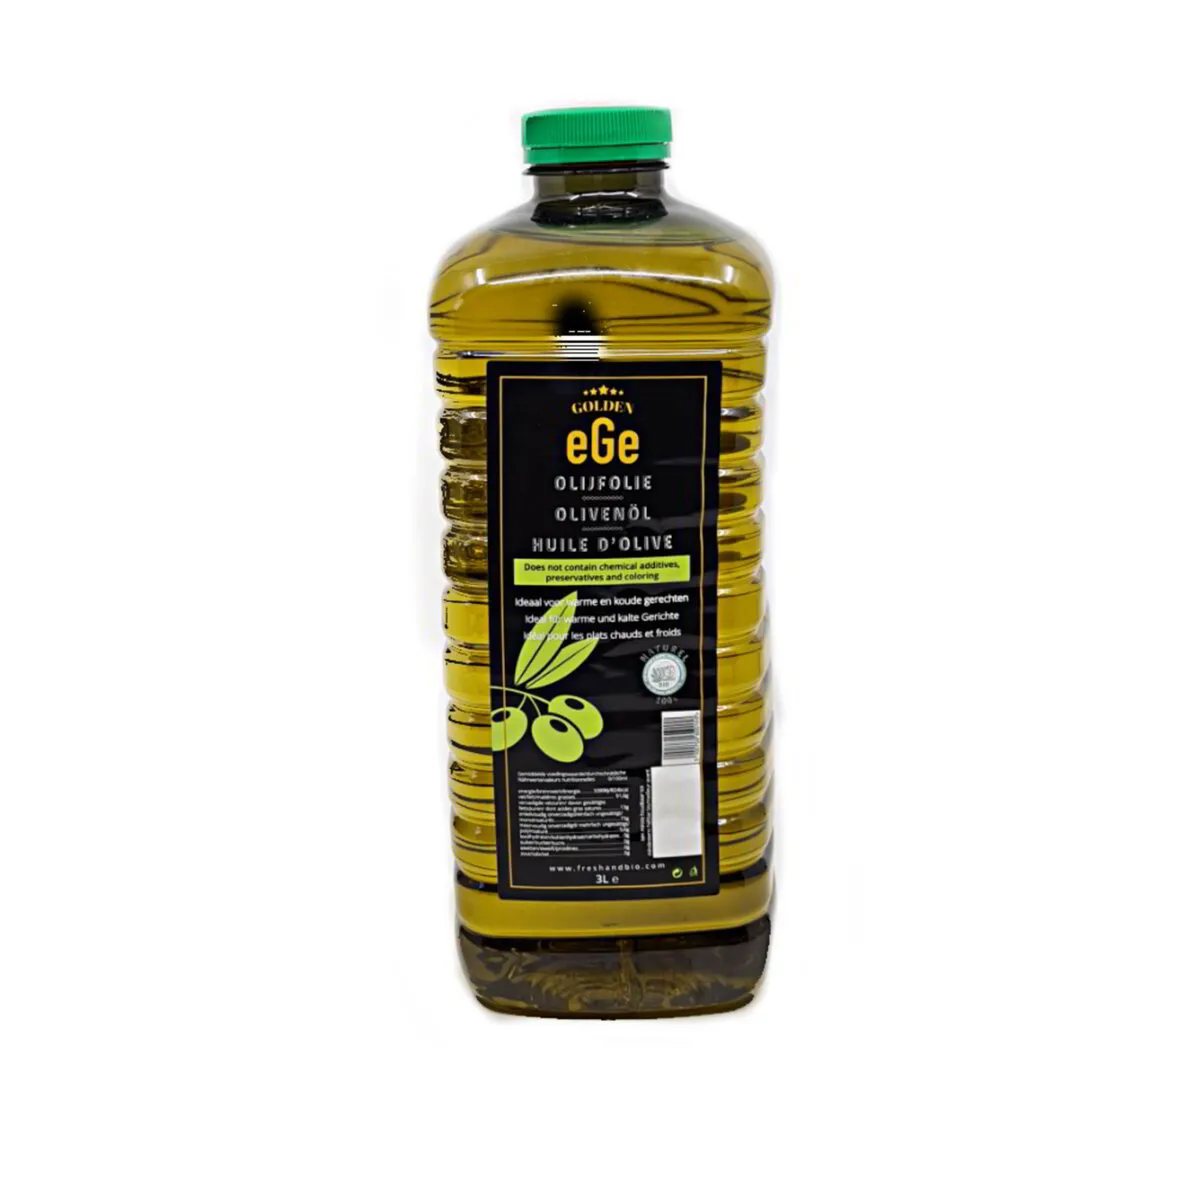 Ege olijfolie 3L